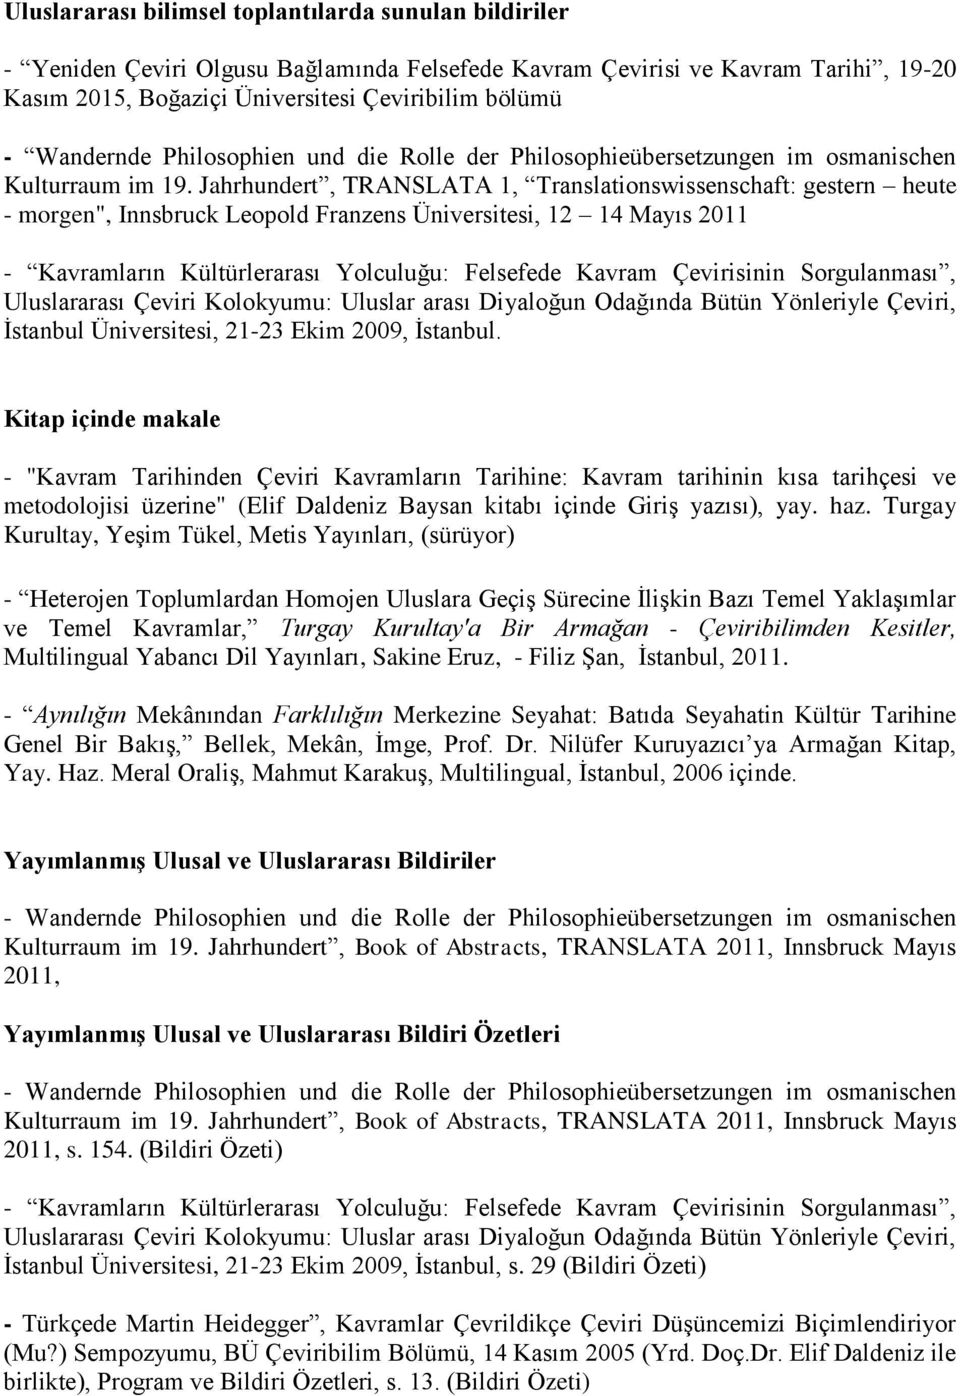 Jahrhundert, TRANSLATA 1, Translationswissenschaft: gestern heute - morgen", Innsbruck Leopold Franzens Üniversitesi, 12 14 Mayıs 2011 - Kavramların Kültürlerarası Yolculuğu: Felsefede Kavram